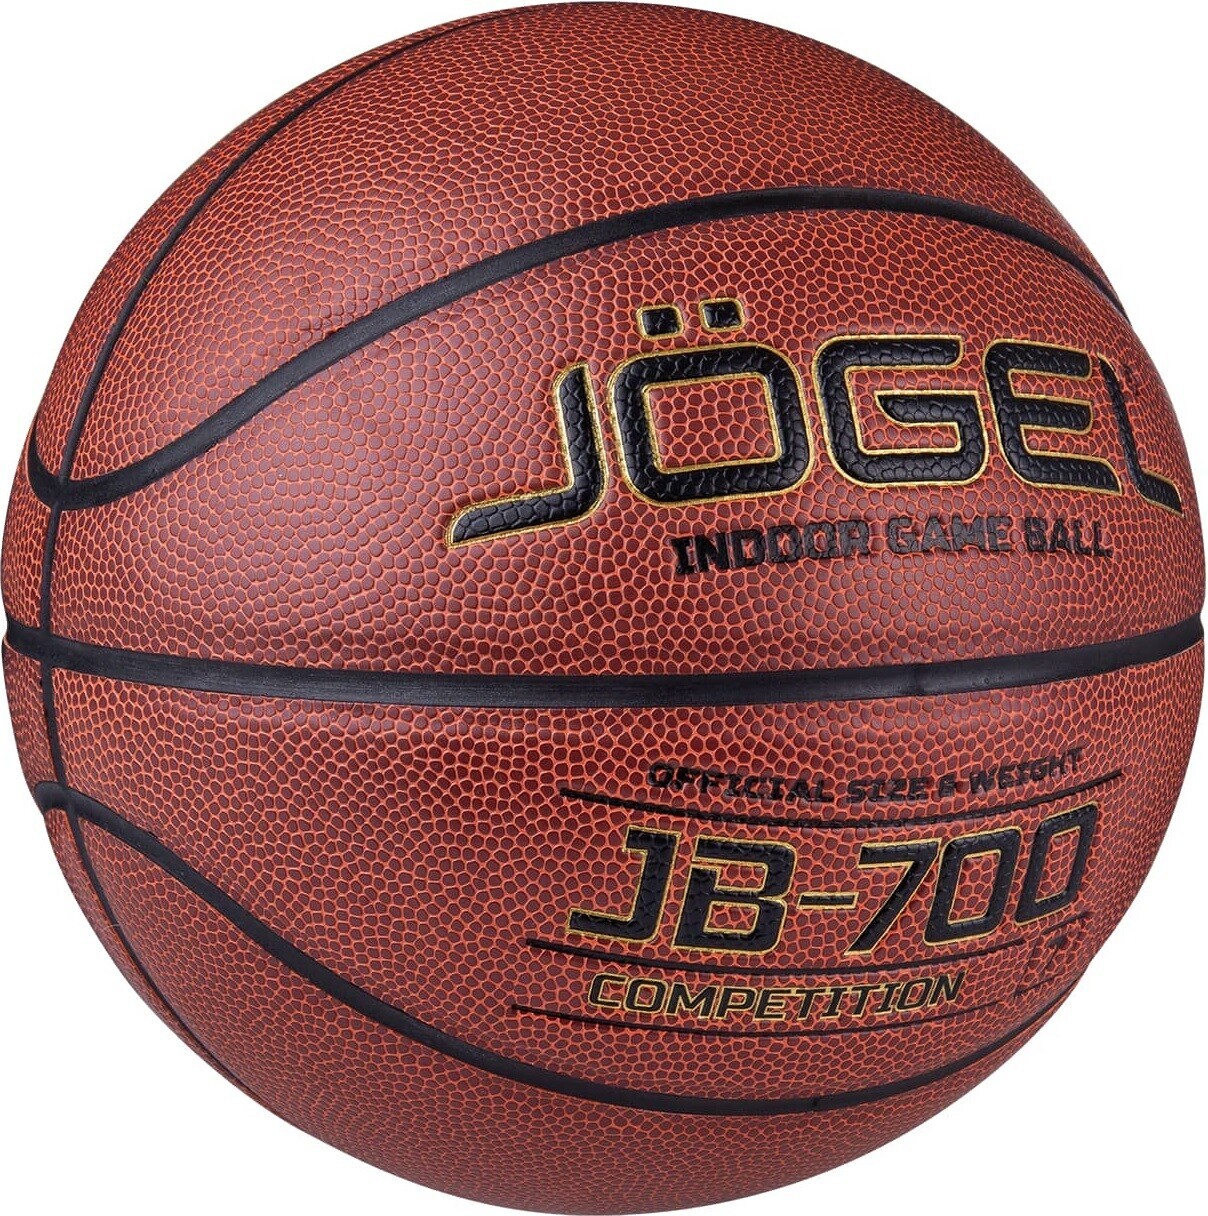 Баскетбольный мяч JOGEL JB-700 №7 (4680459115256)